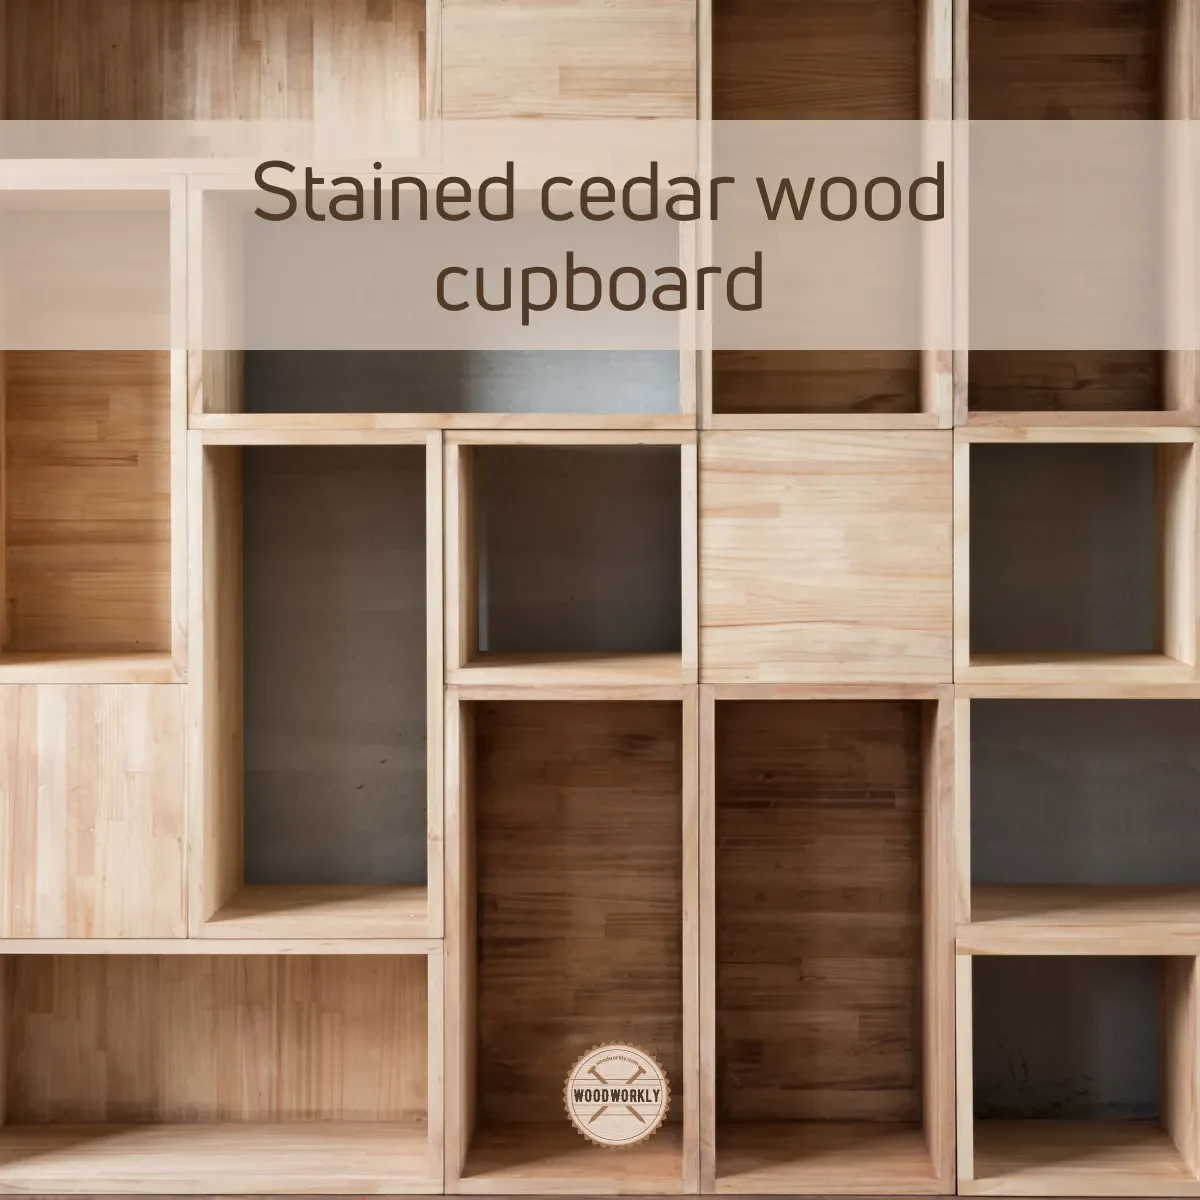 Stained cedar wood cupboard